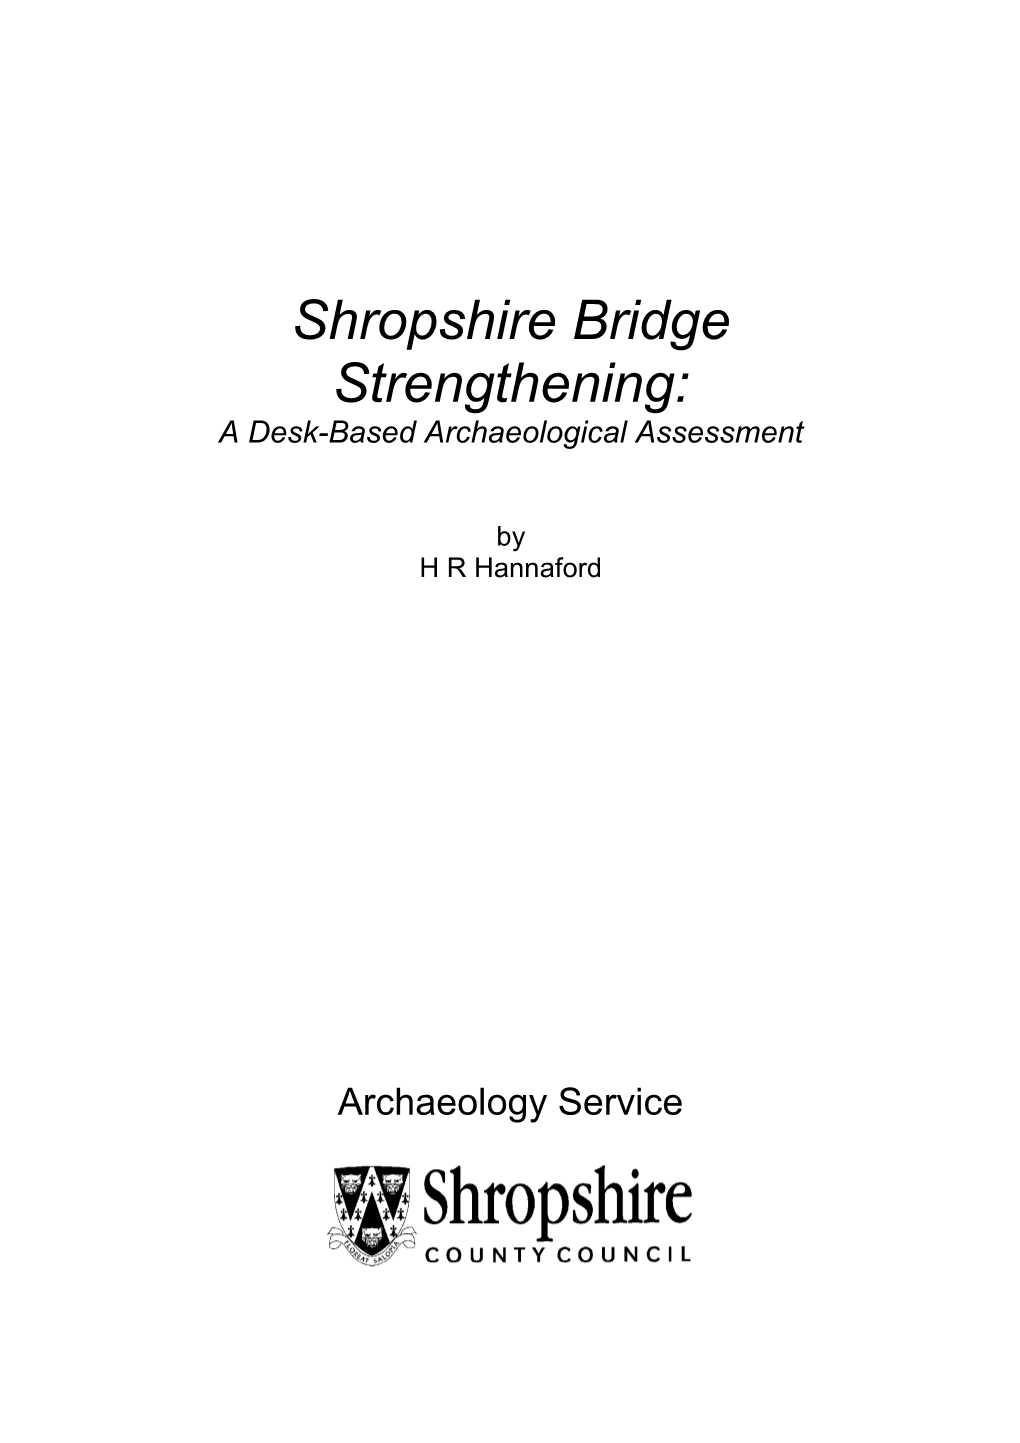 Shropshire Bridge Strengthening: a Desk-Based Archaeological Assessment